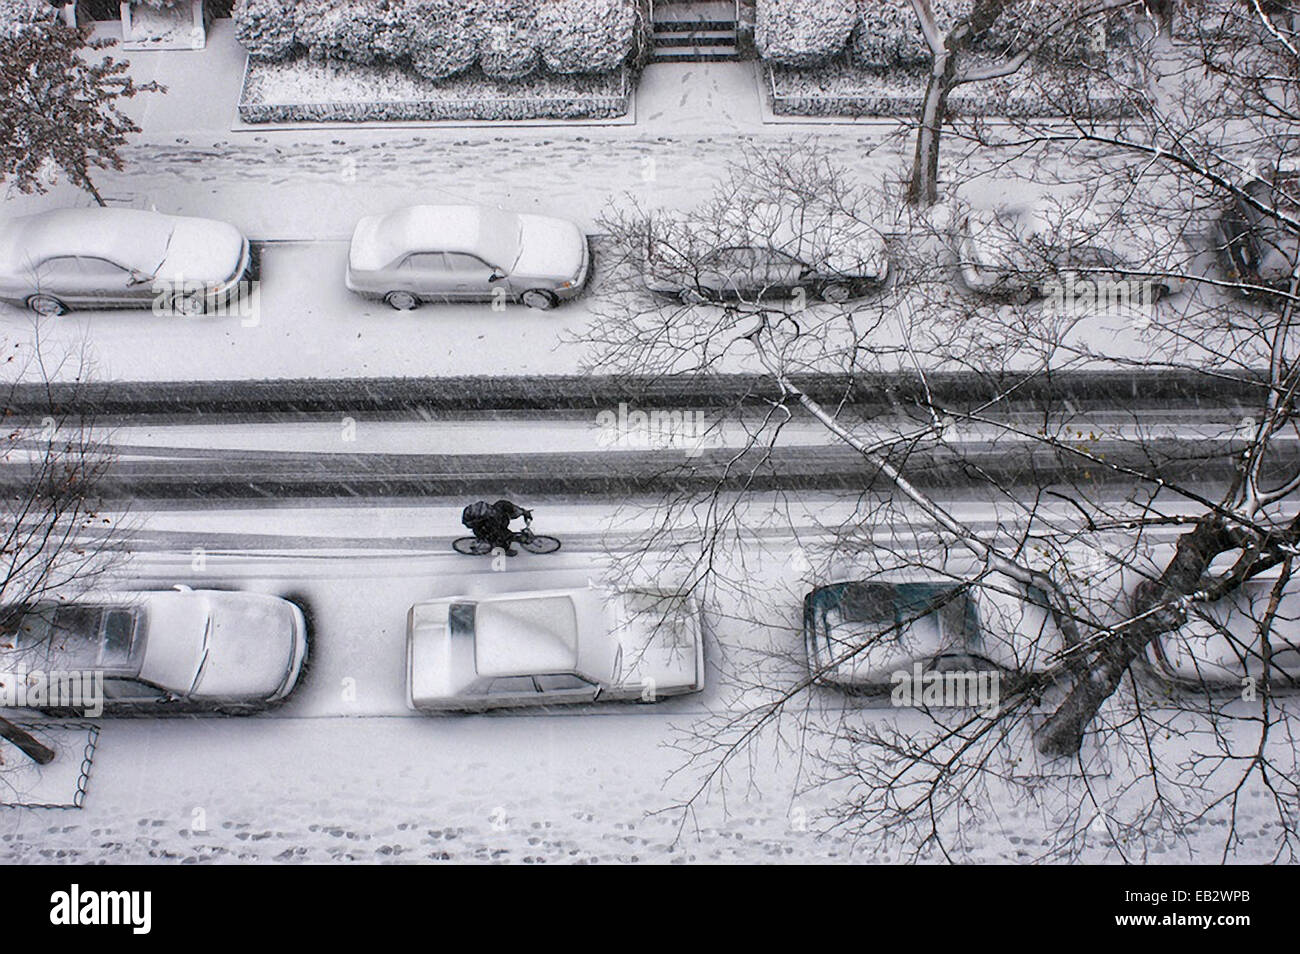 Un ciclista passa automobili parcheggiate su un New York City street durante una bufera di neve. Foto Stock